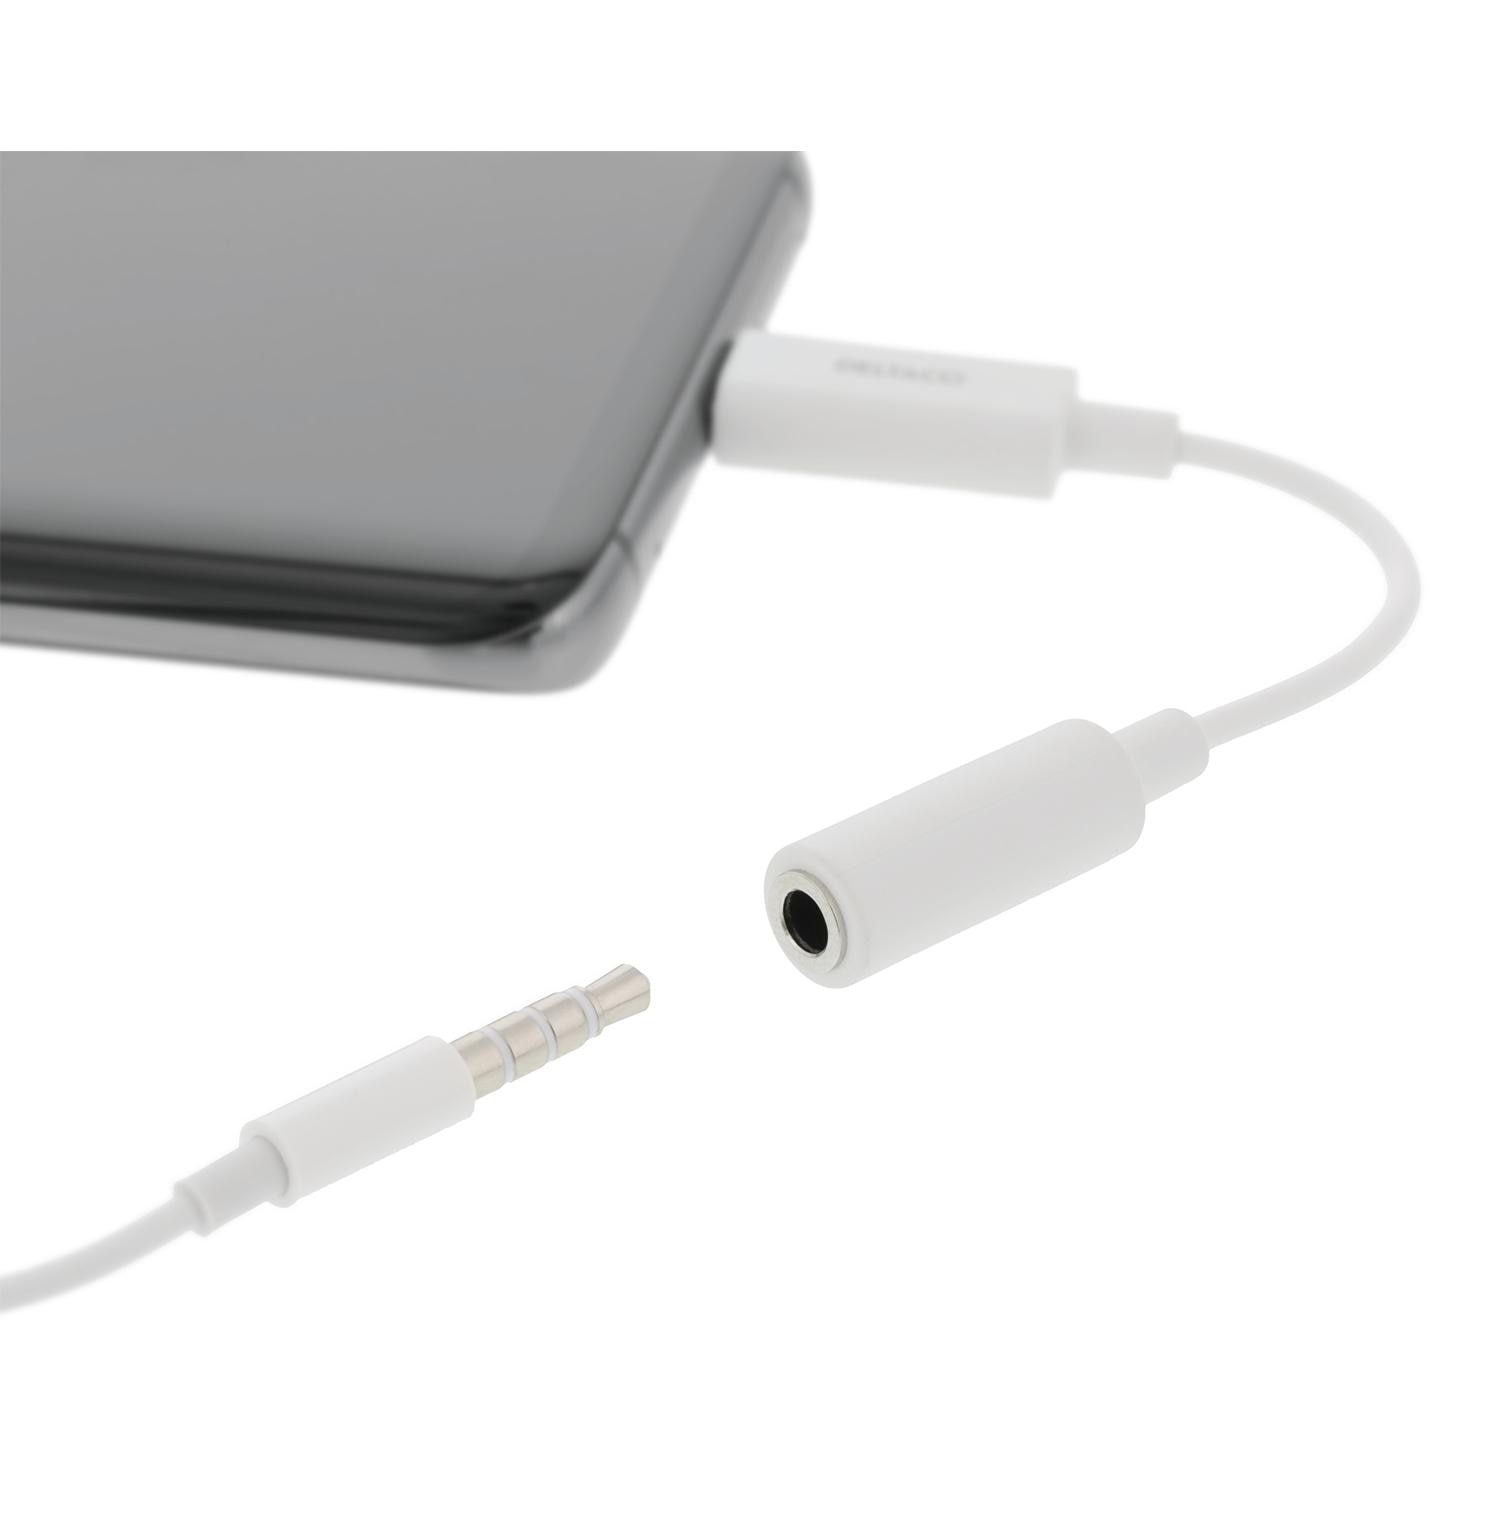 Adattatore da USB-C a DAC da 3,5 mm Bianco